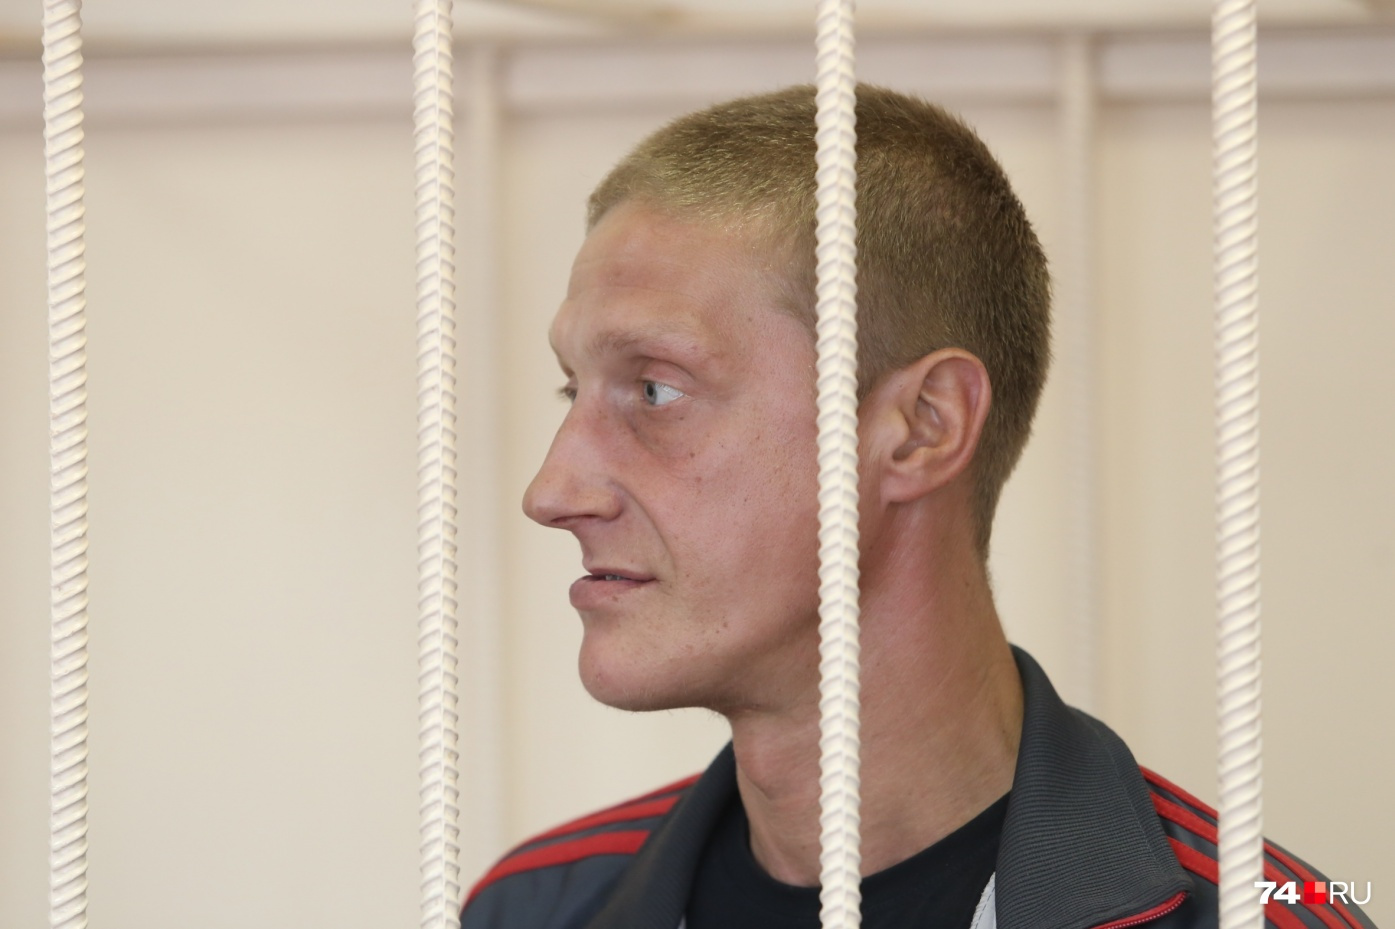 Евгений Кузьмин просил, чтобы его отпустили из следственного изолятора, но суд отказал мужчине